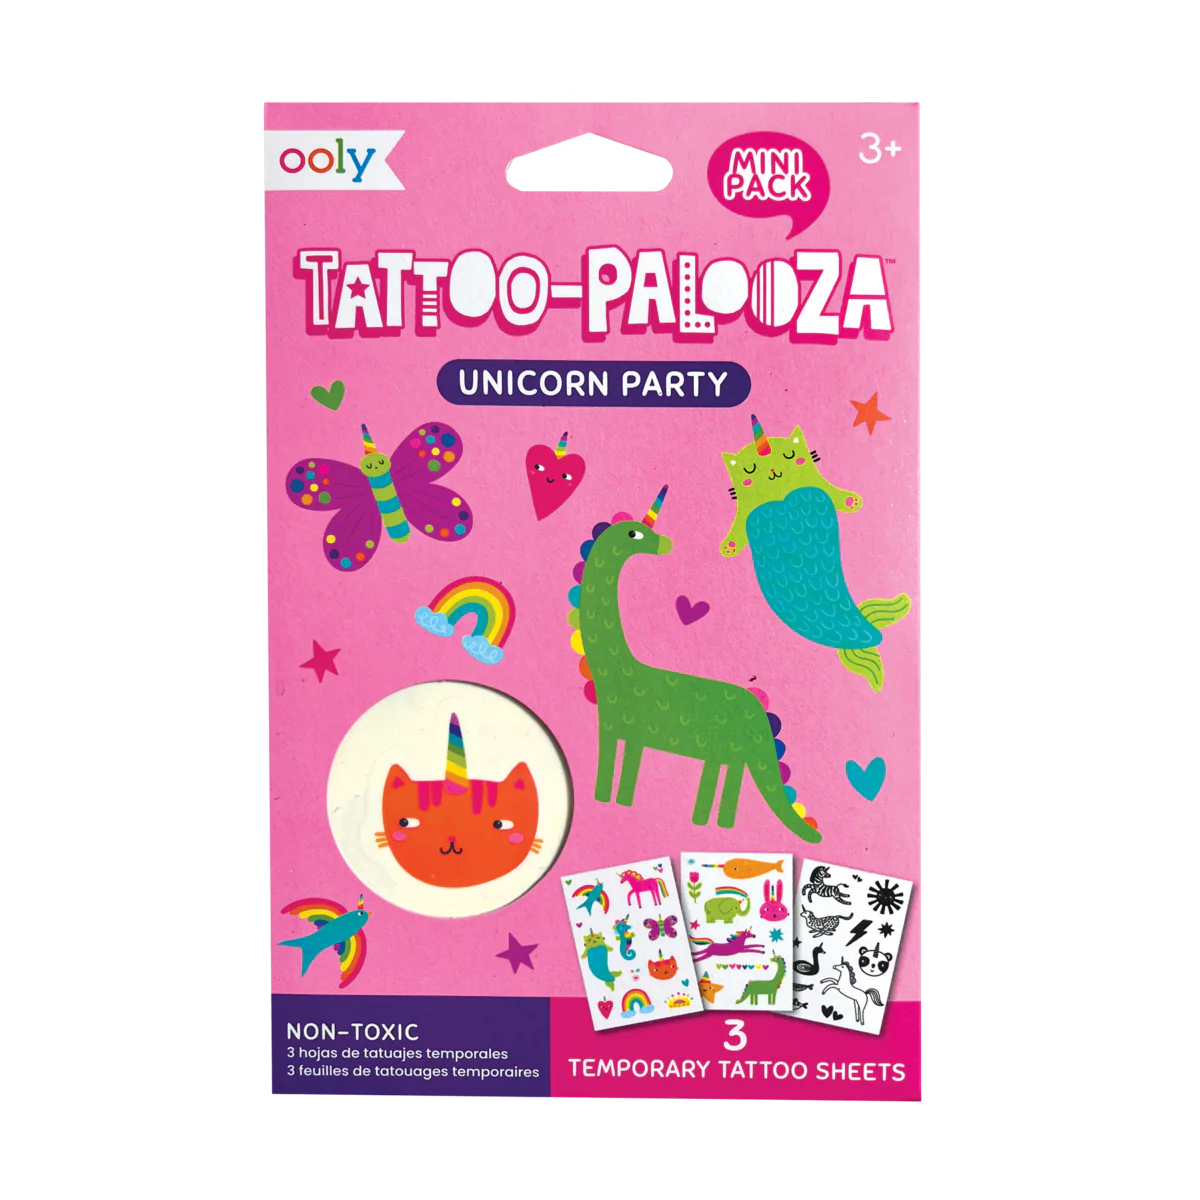 Tattoo-palooza unicorn party